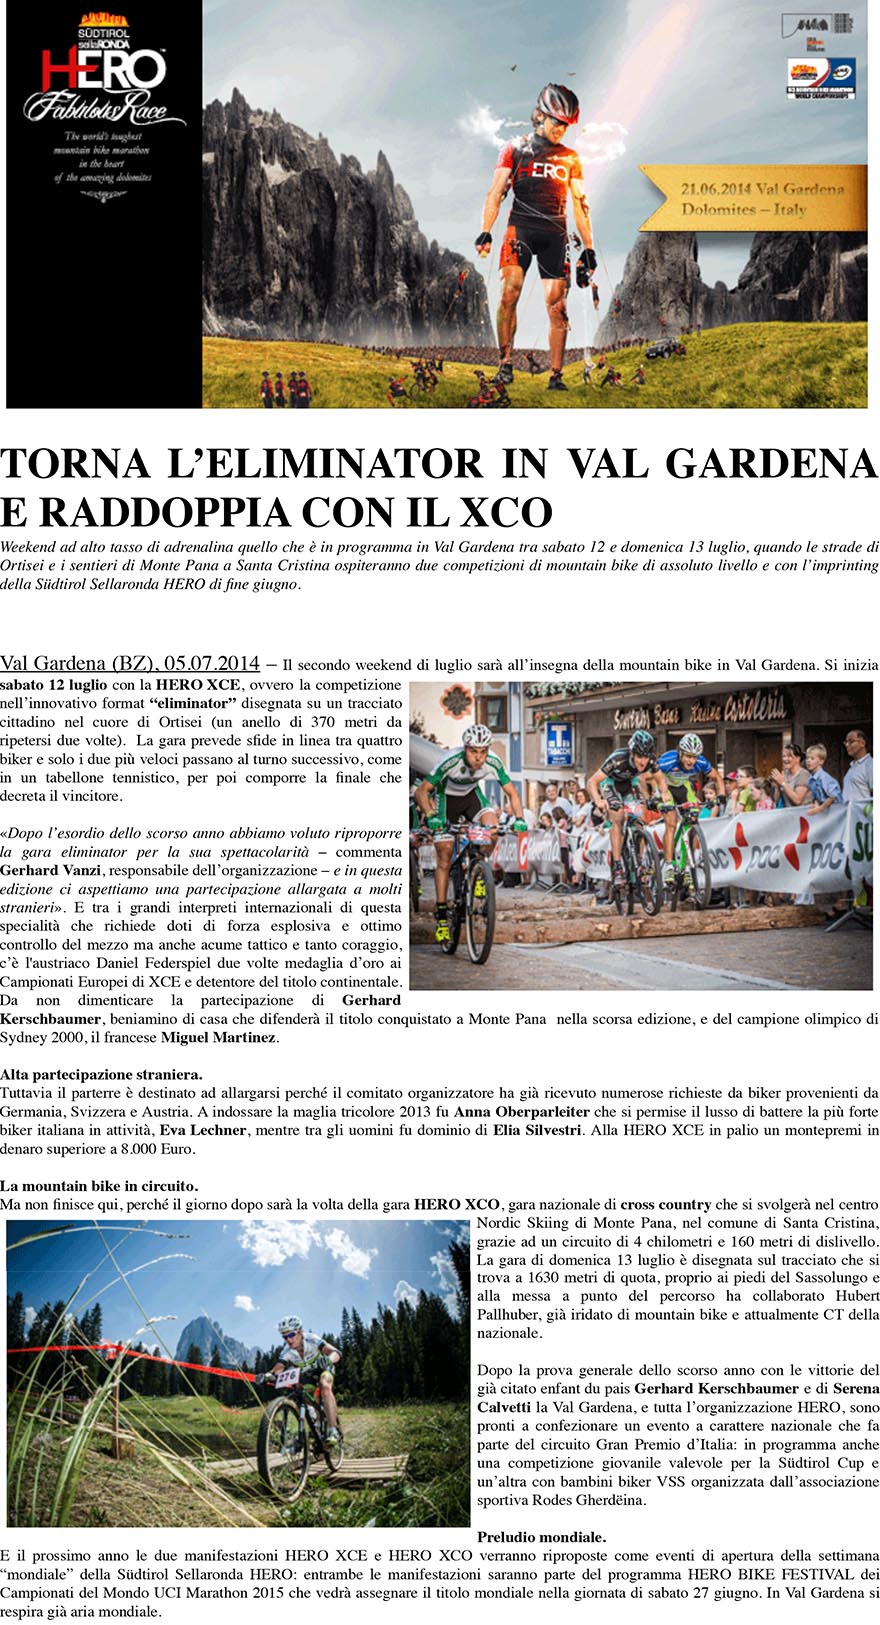 abato 12 luglio torna la gara HERO XCE Eliminator a Ortisei e il giorno dopo si replica con la prova HERO XCO a Monte Pana di Santa Cristina